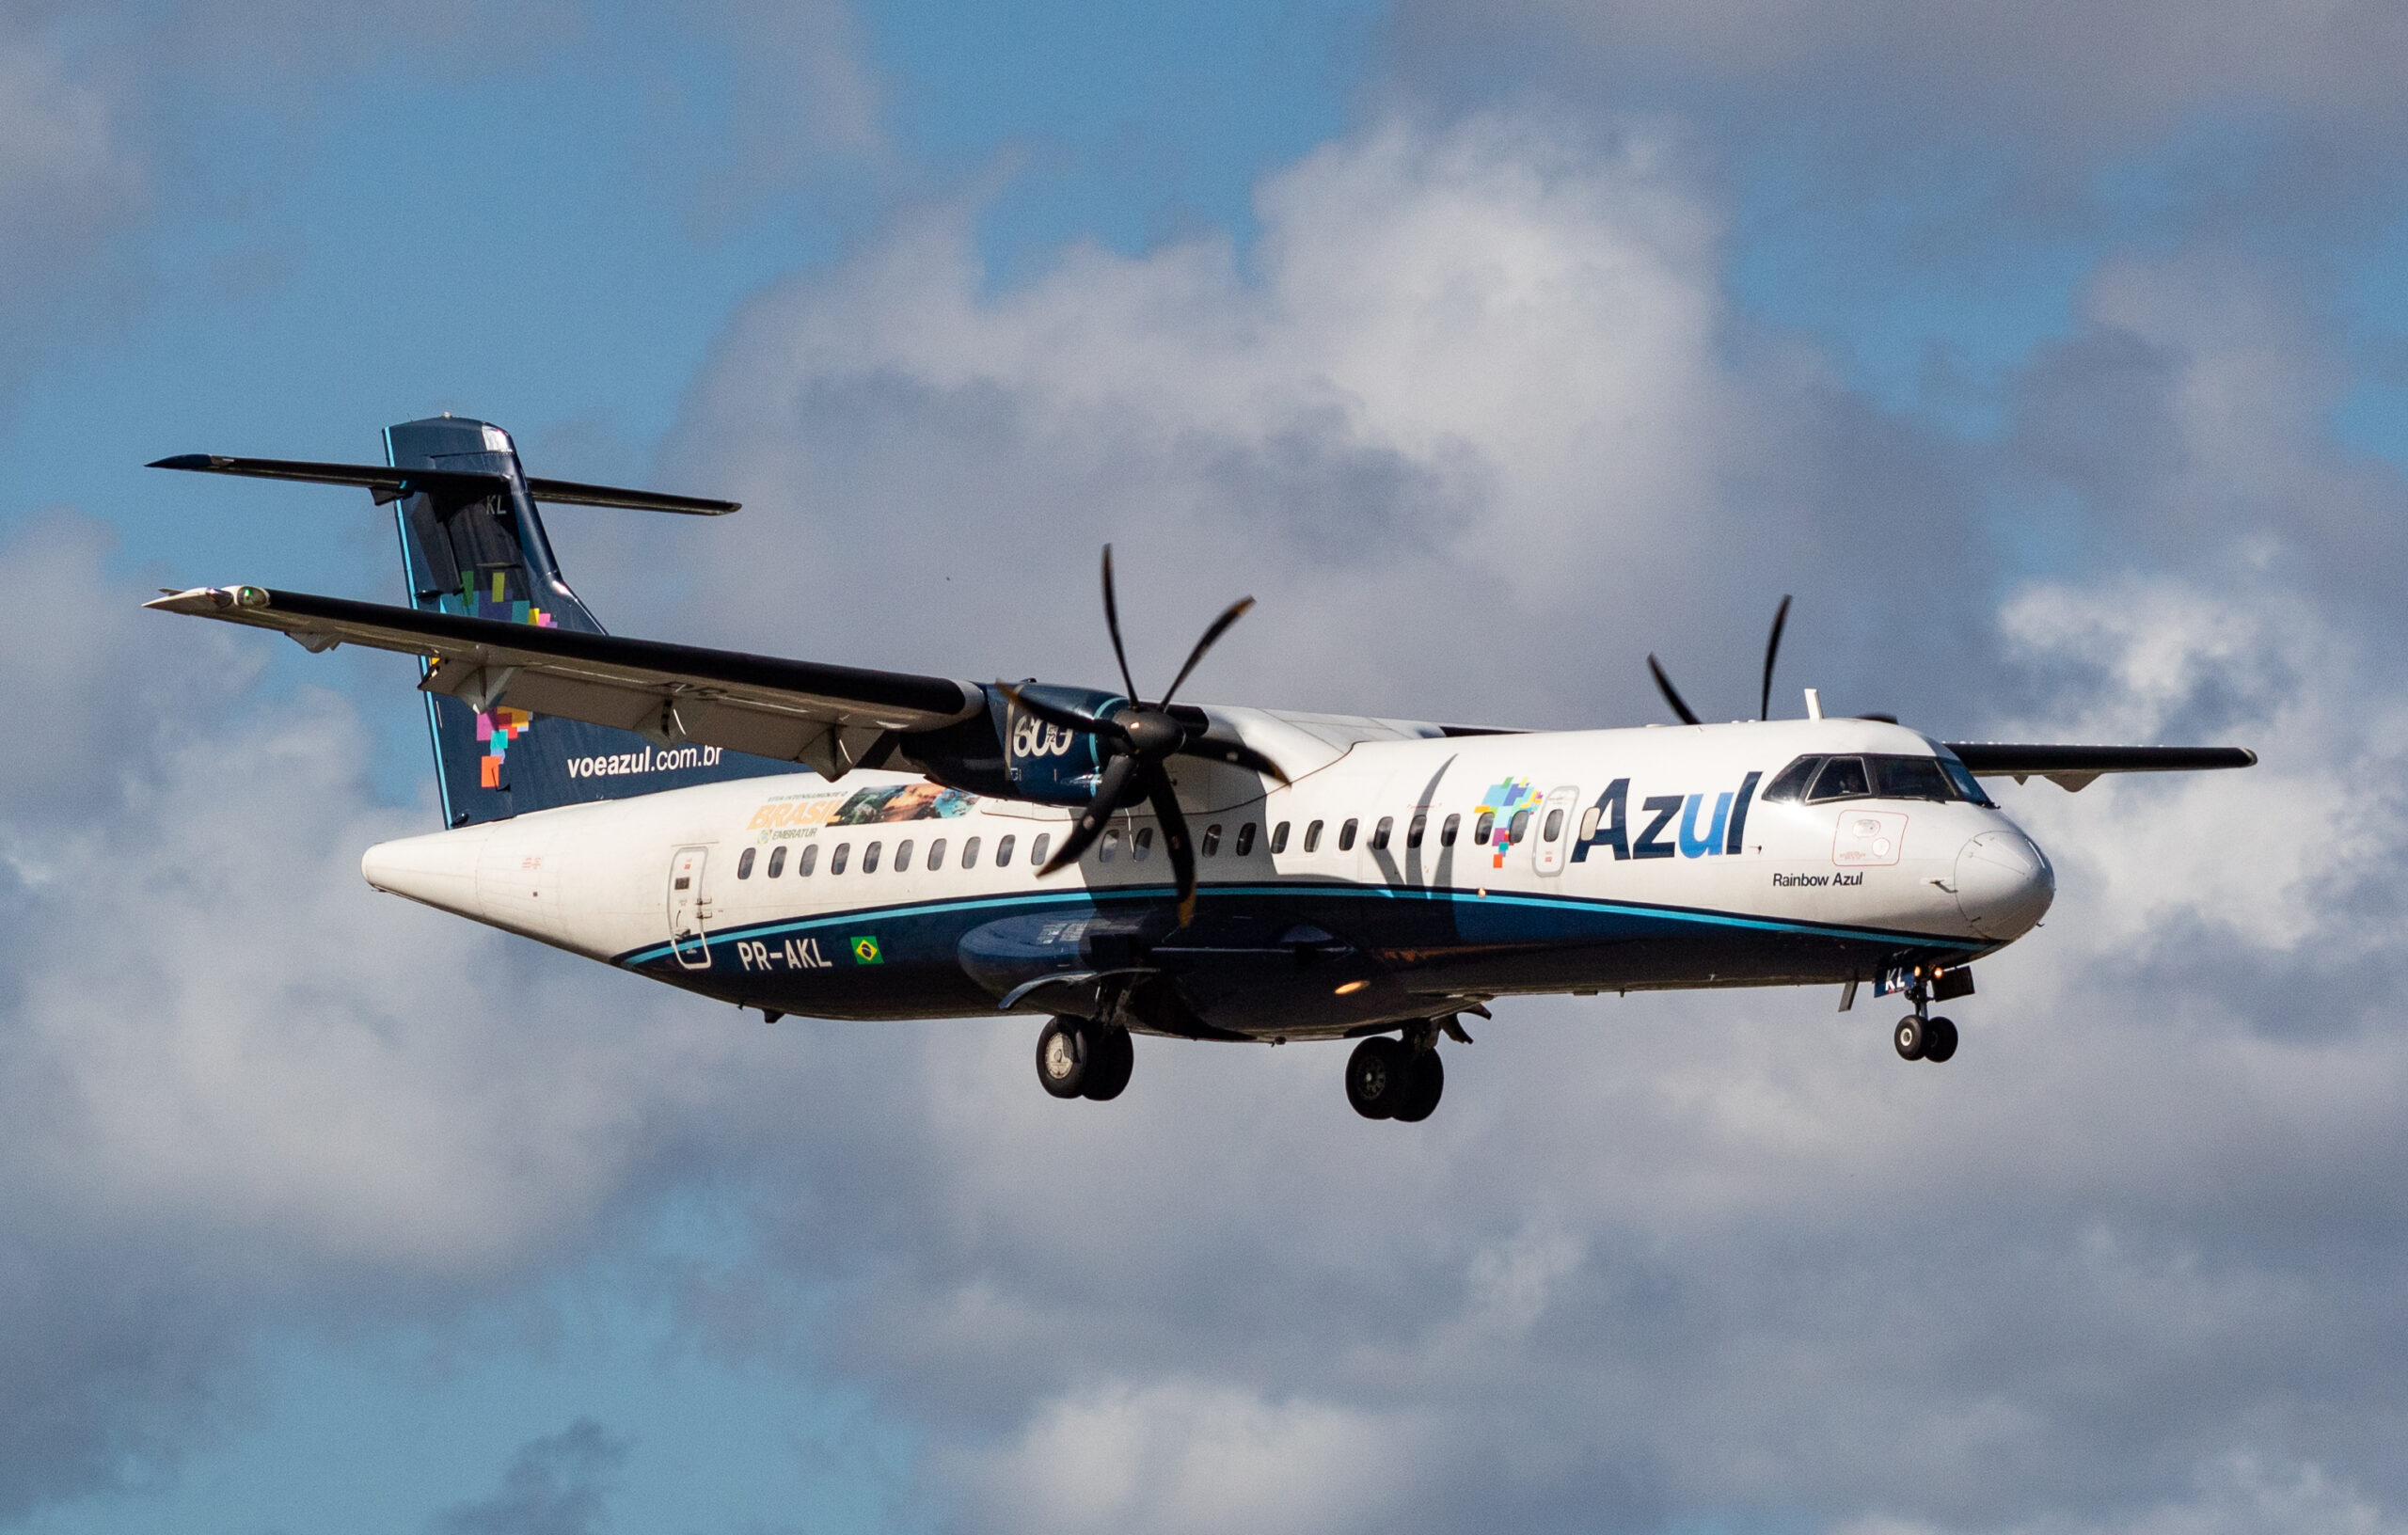 PR-AKL – ATR 72-600 – Azul Linhas Aéreas - Blog do Spotter